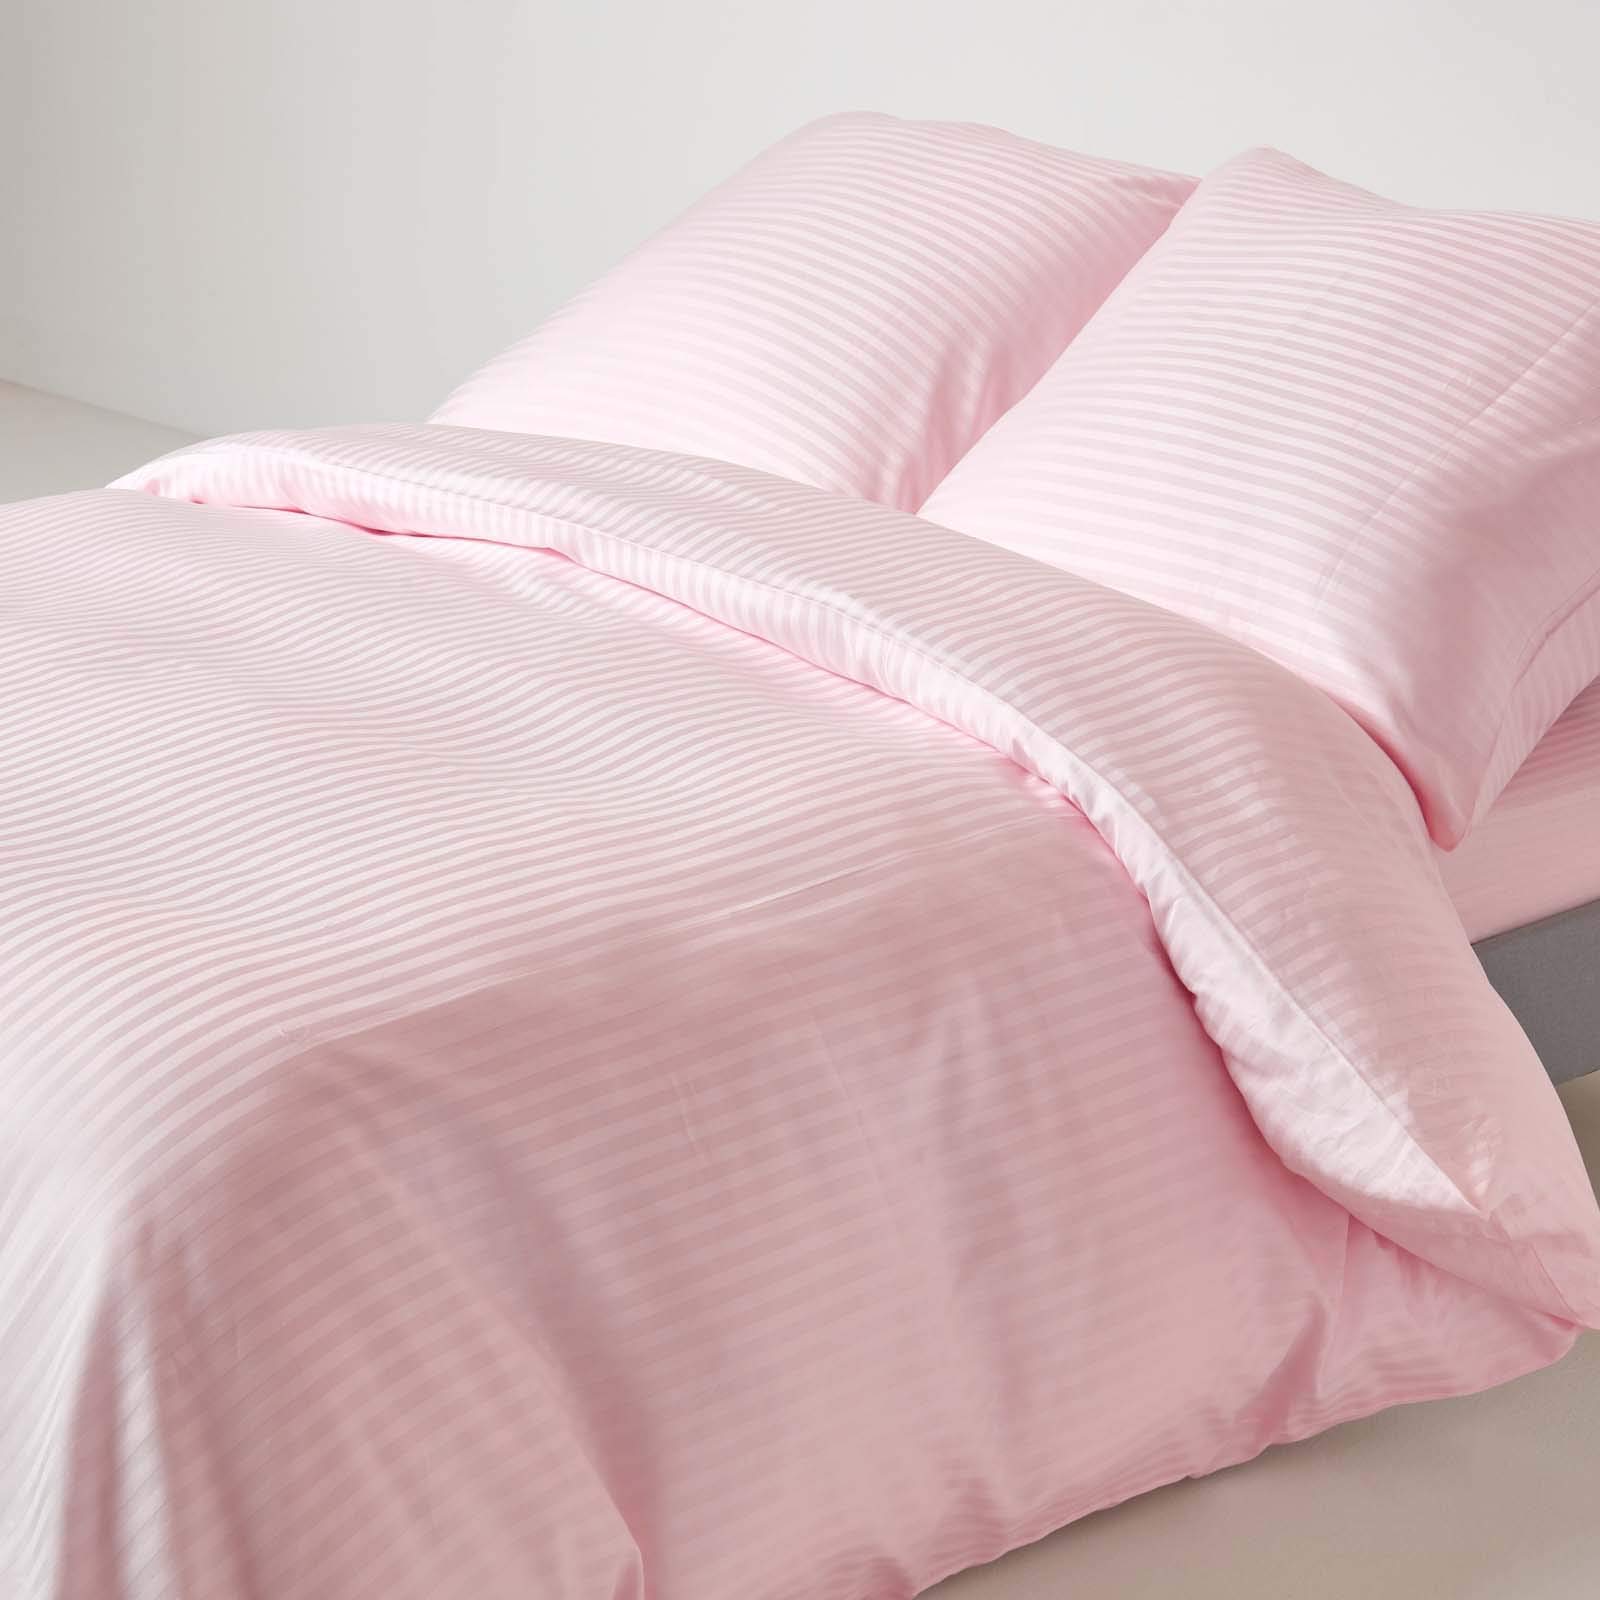 Homescapes 2-teiliges Bettwäsche-Set, Bettbezug 150 x 200 cm mit Kissenbezug 80 x 80 cm, 100% ägyptische Baumwolle mit Satin-Streifen, Fadendichte 330, rosa